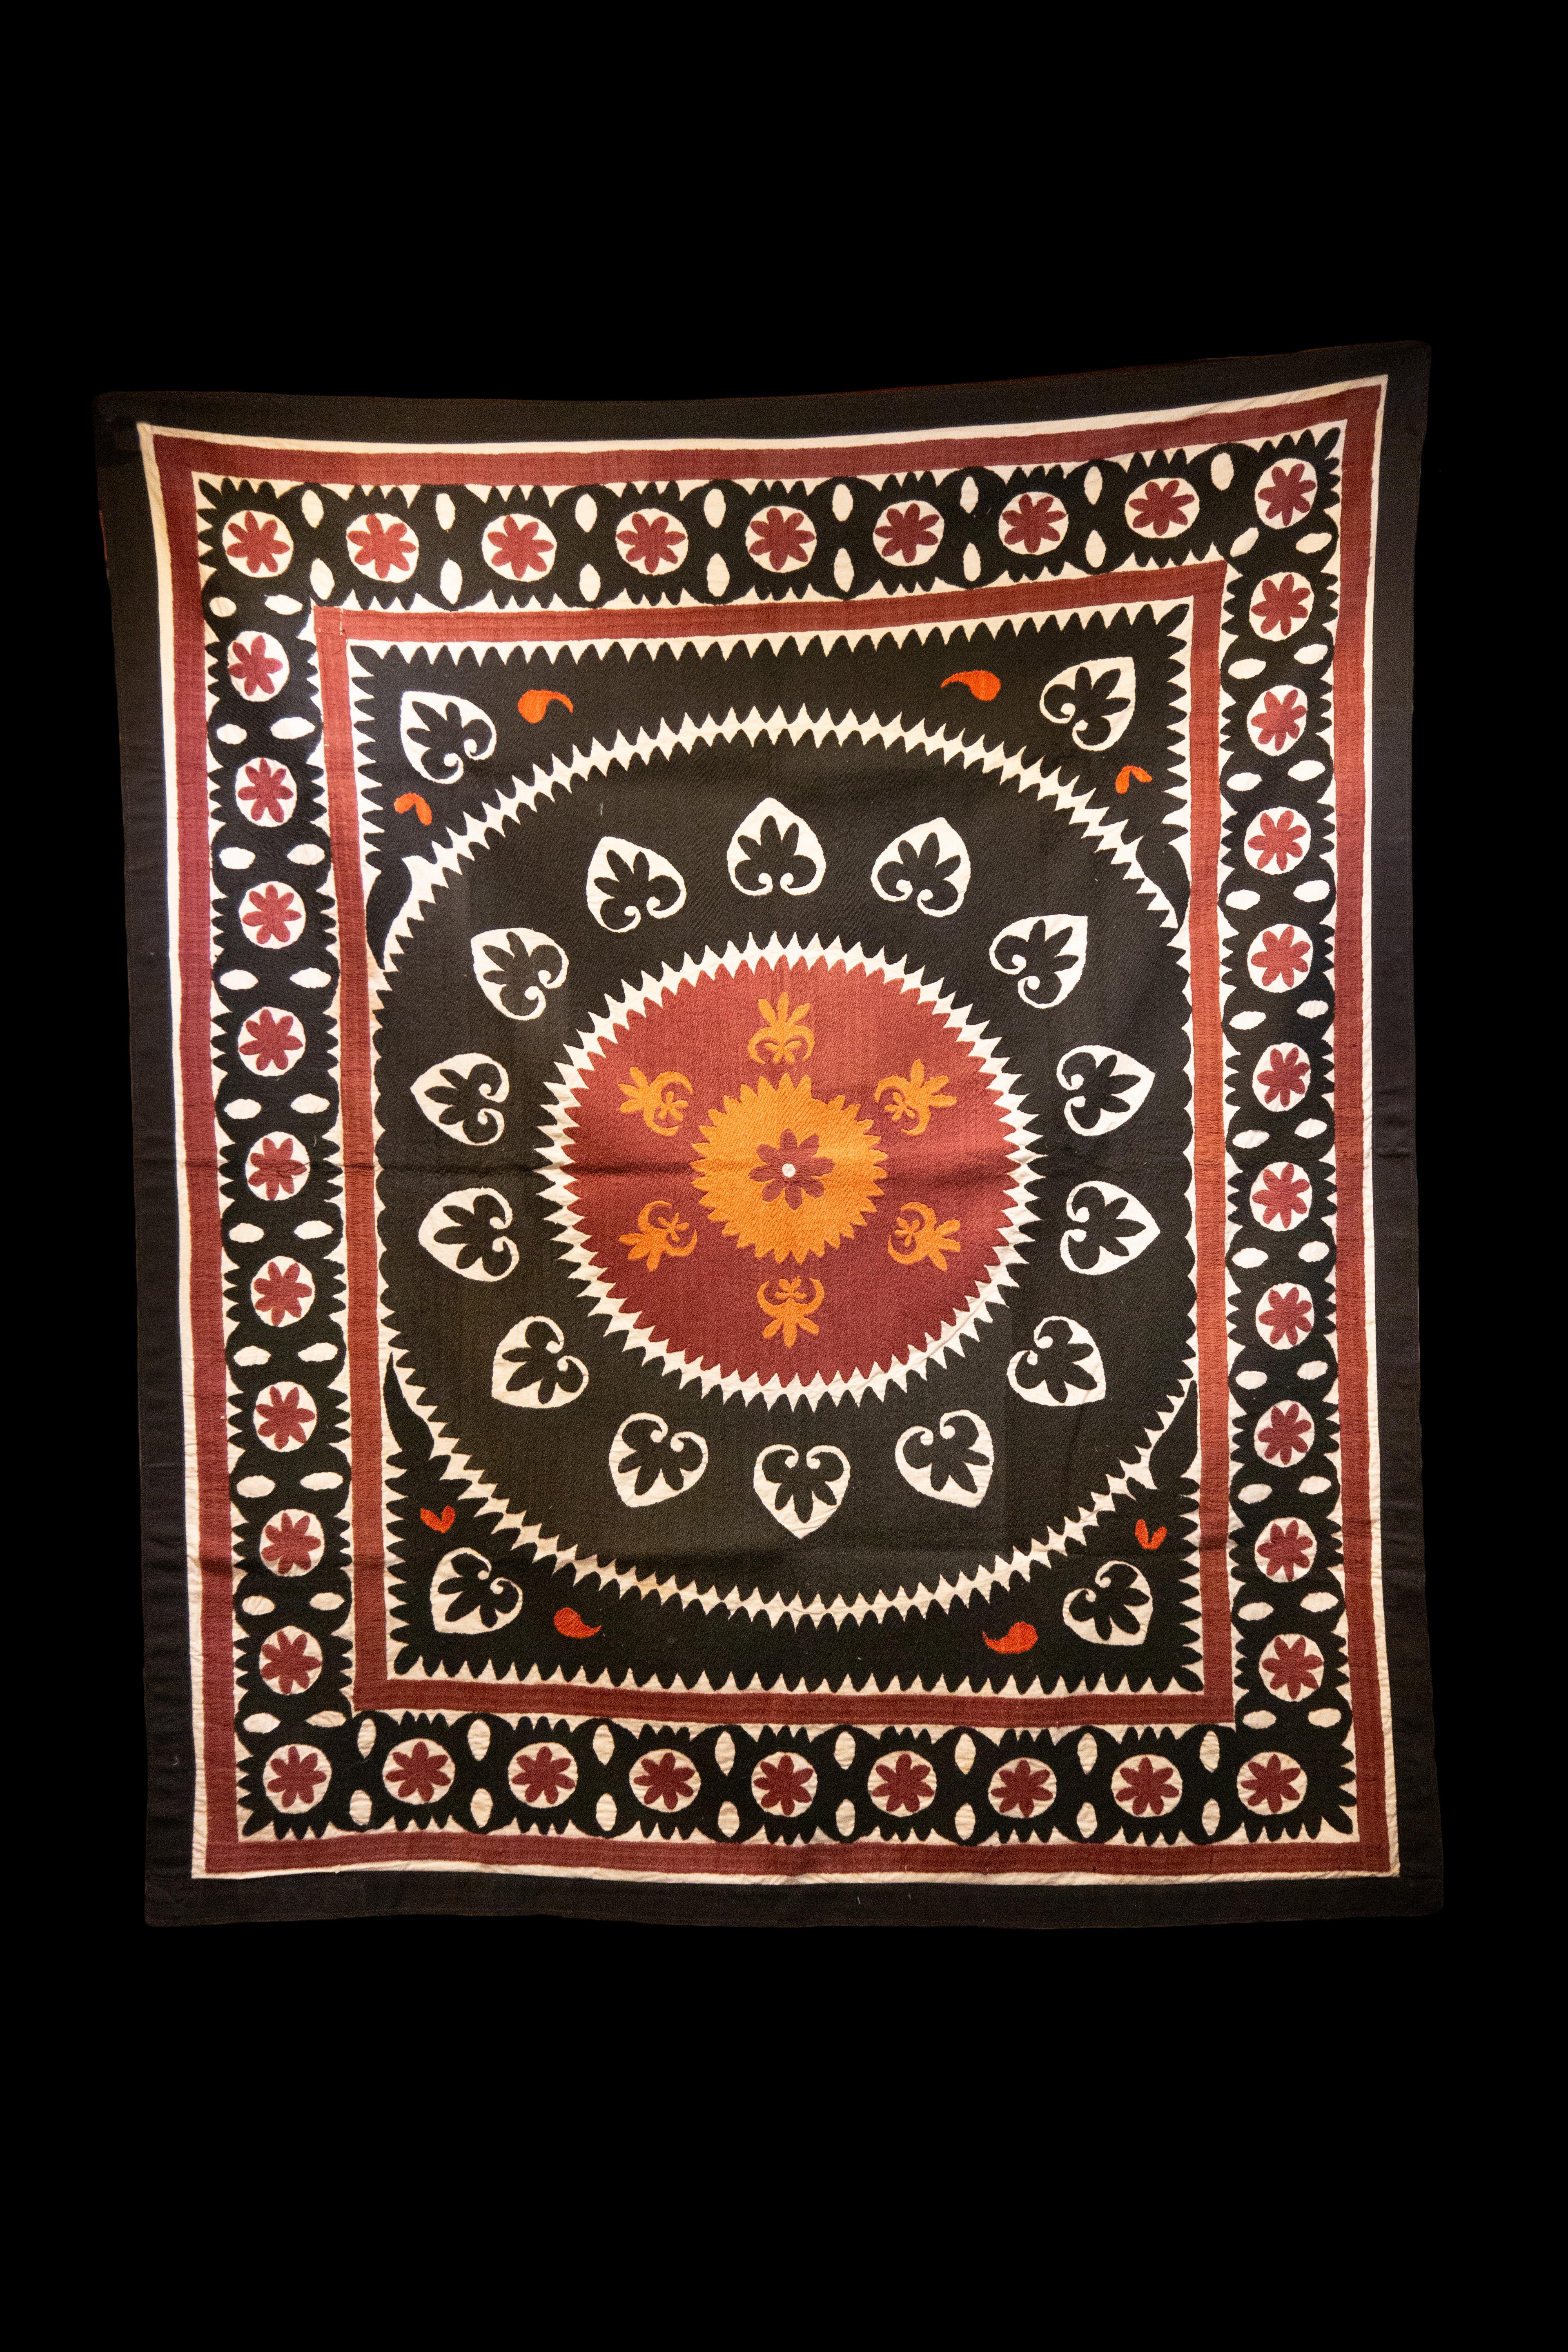 Suzani en coton vintage fait à la main, motifs géométriques anthracite, orange et rouge.

Mesures : 60.5